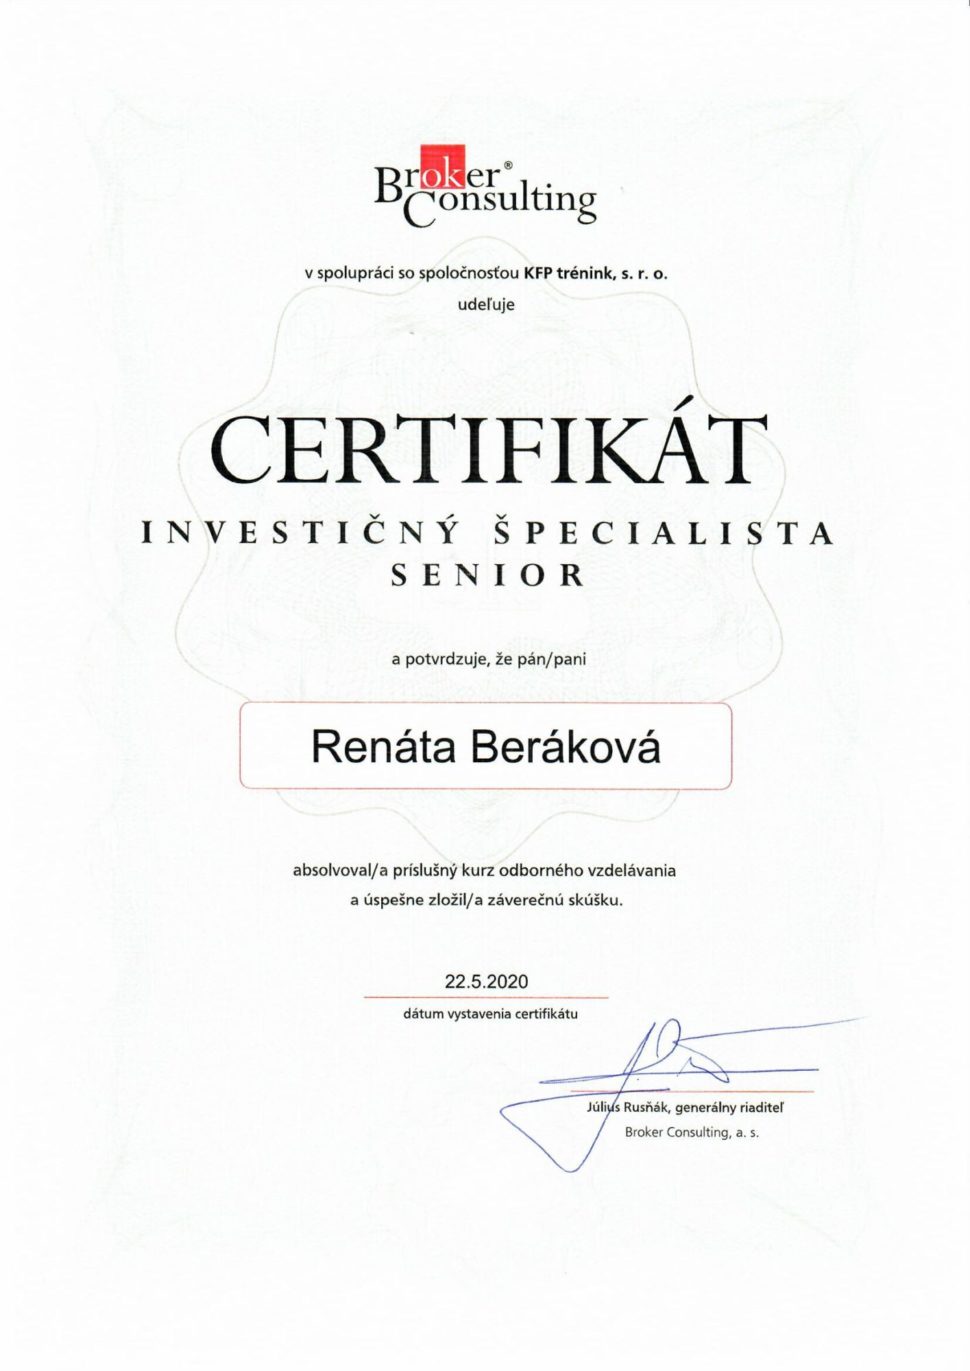 Renáta Beráková, certifikát investičný špecialista senior